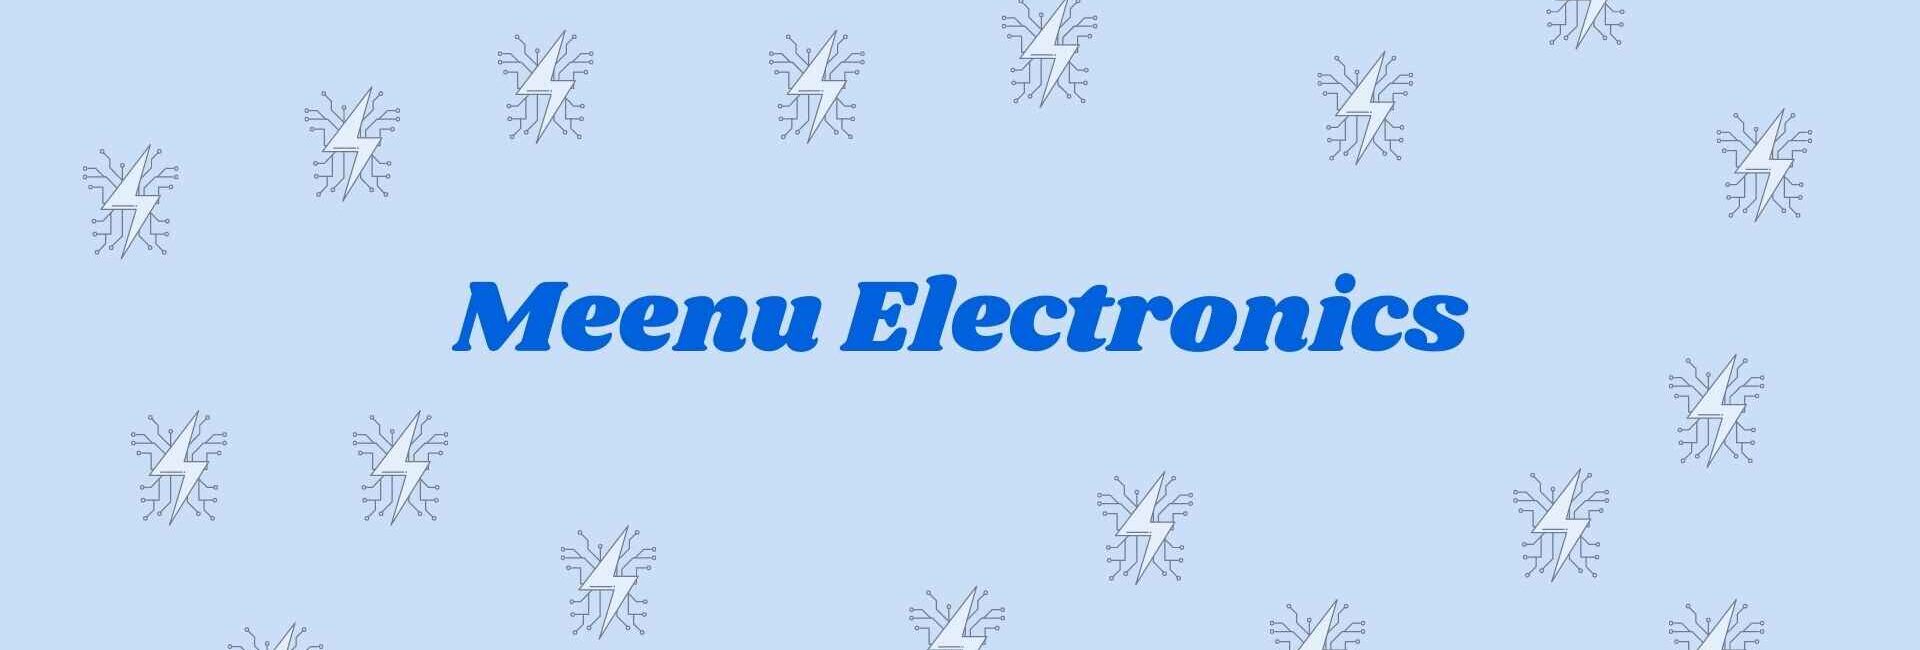 Meenu Electronics - Electronics Goods Dealer in Noida